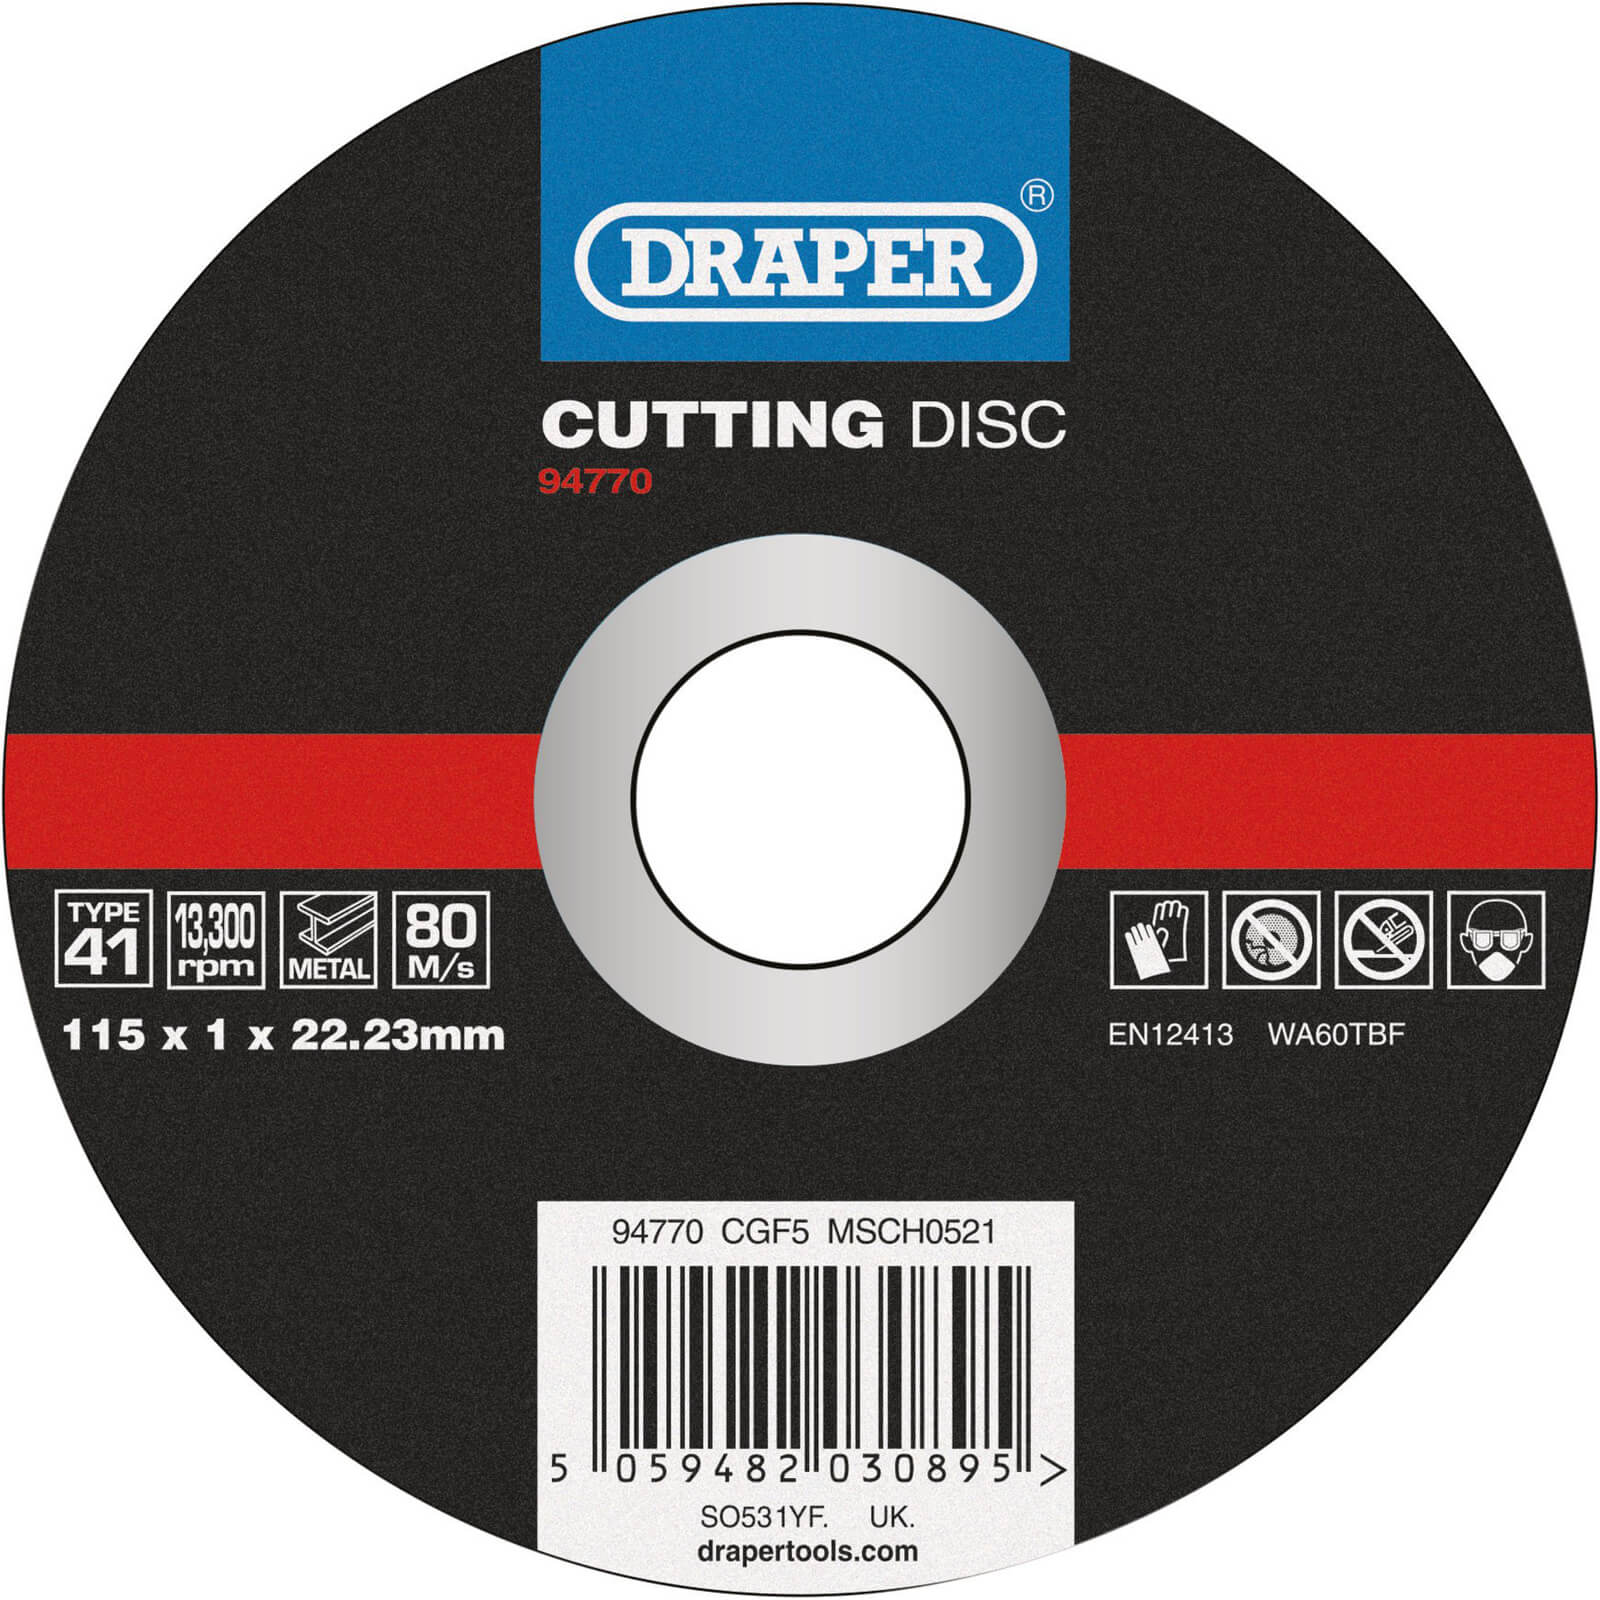 Draper Metal Cutting Disc 115mm 1mm 22mm